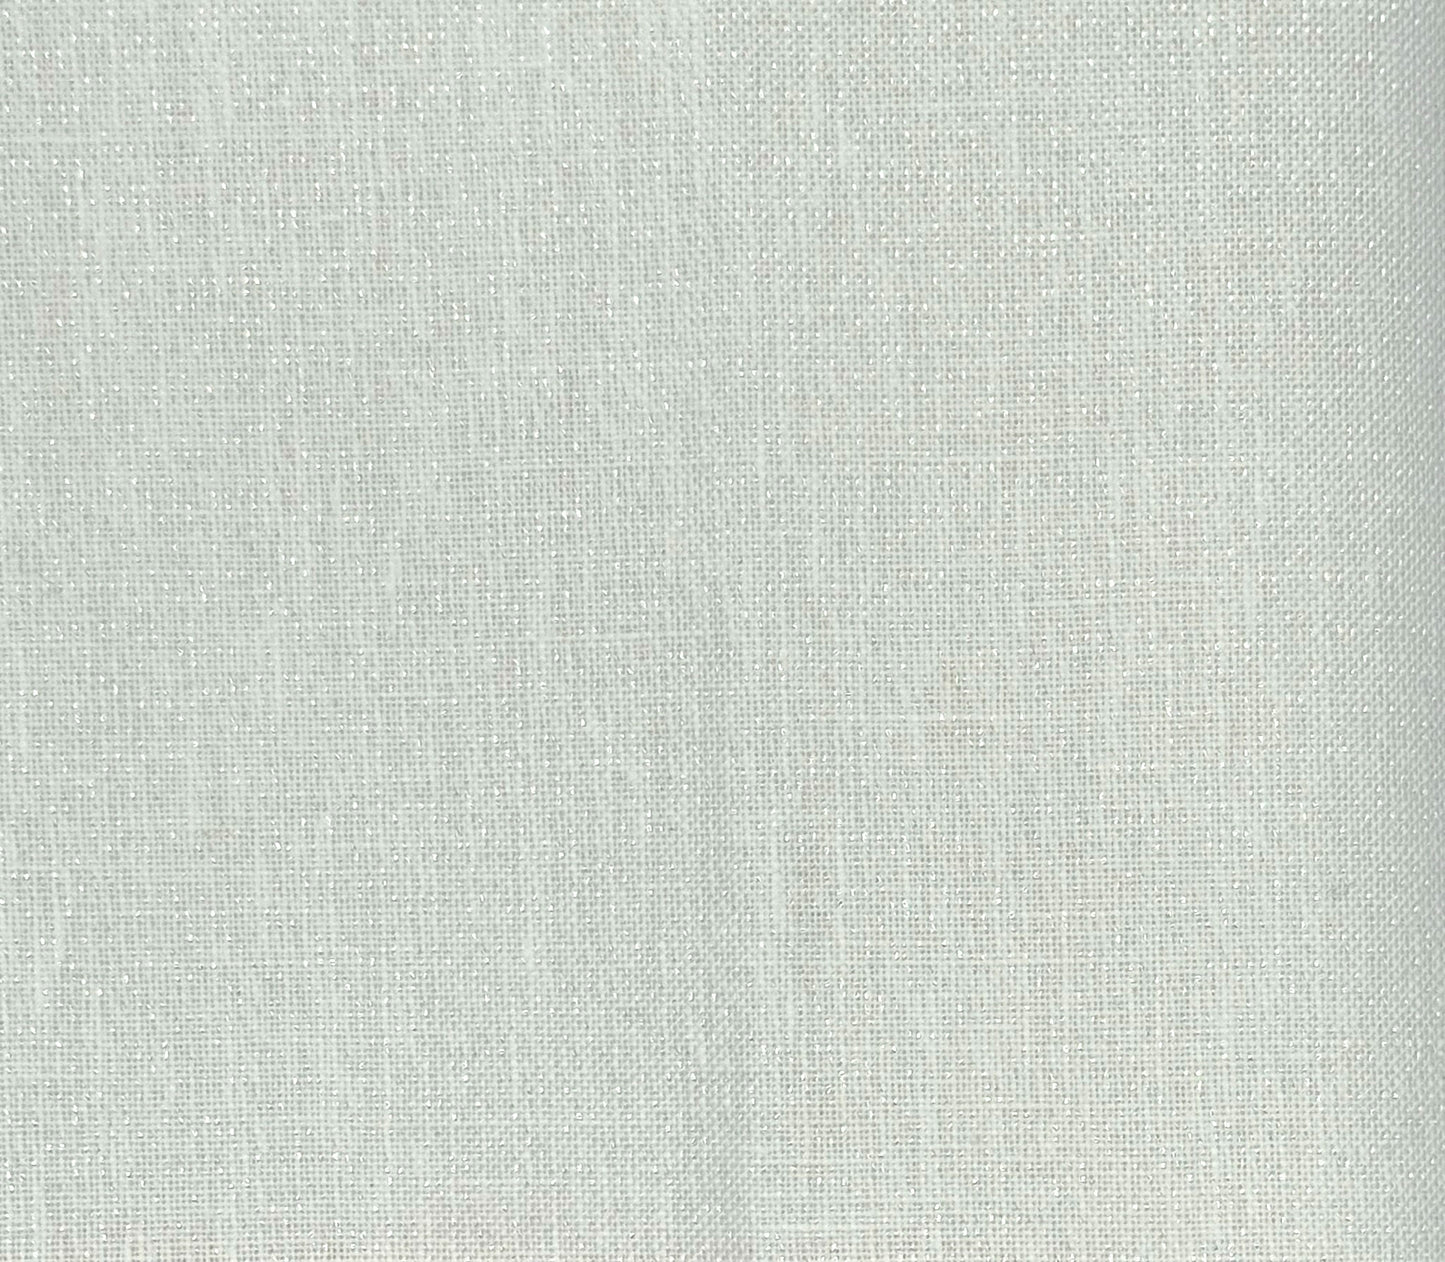 36 Count White Opalescent Edinburgh Linen by Zweigart